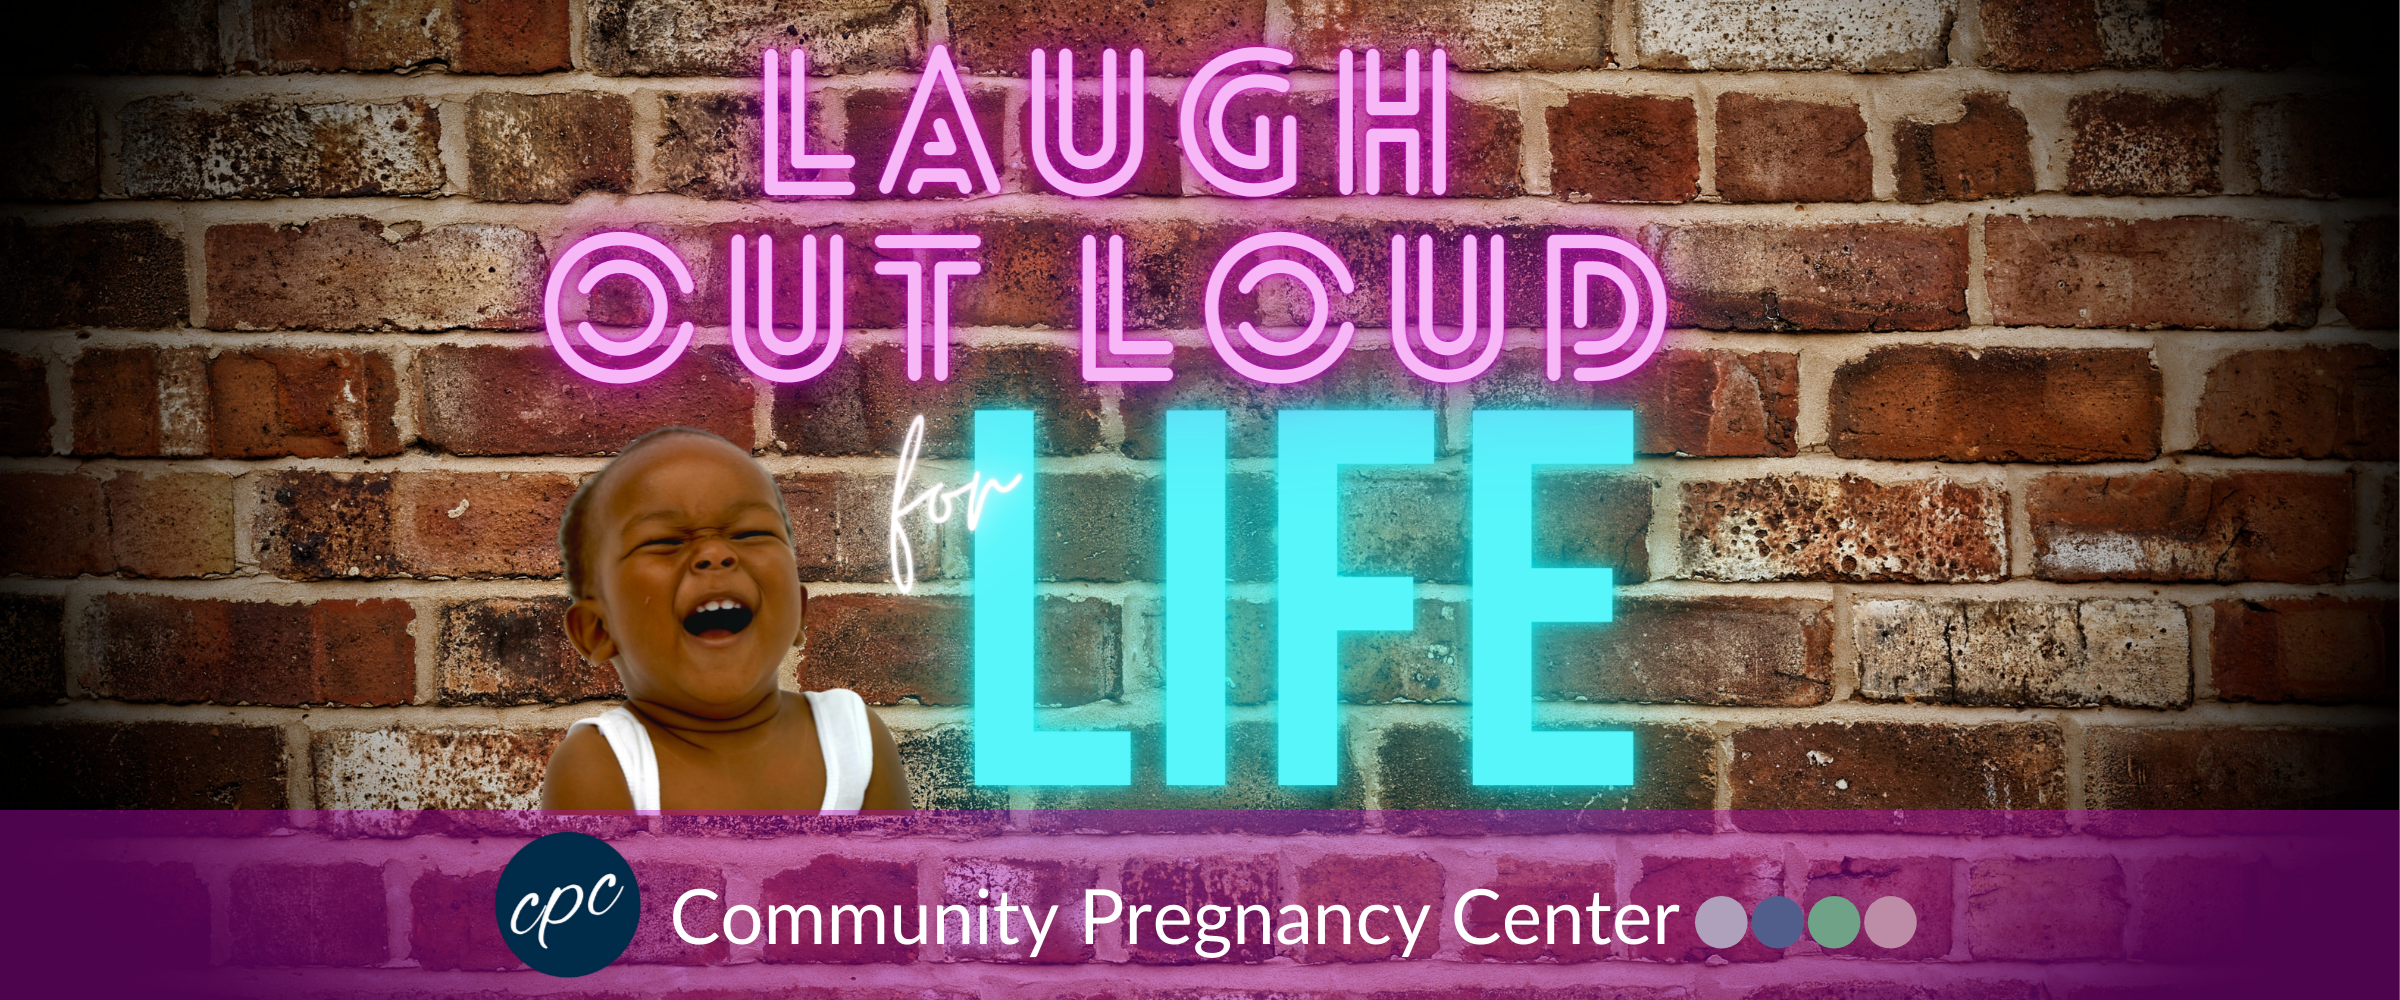 Laugh Out Loud web site banner